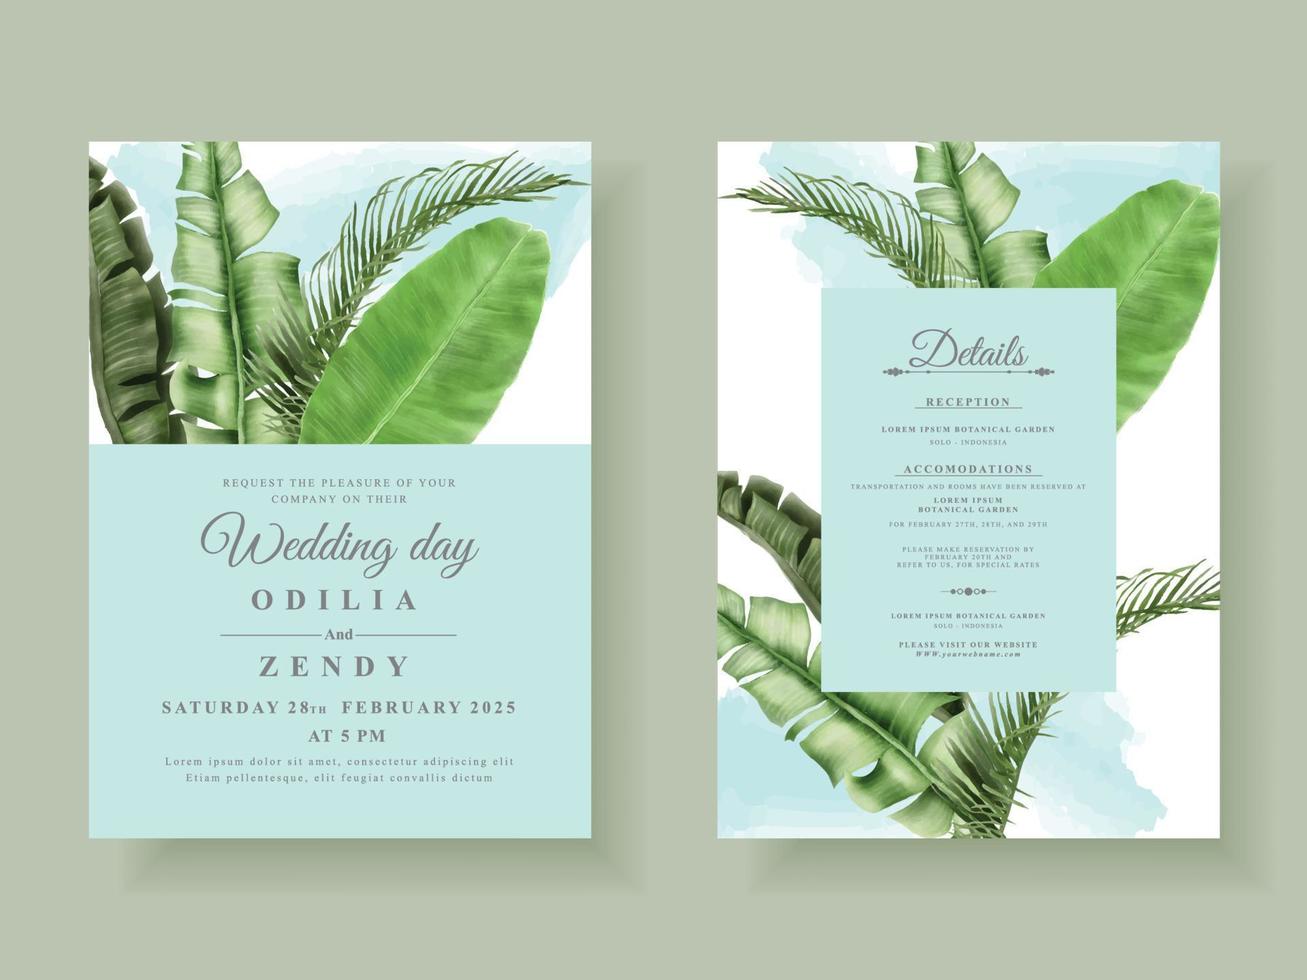 modello di carta di invito a nozze belle foglie tropicali vettore